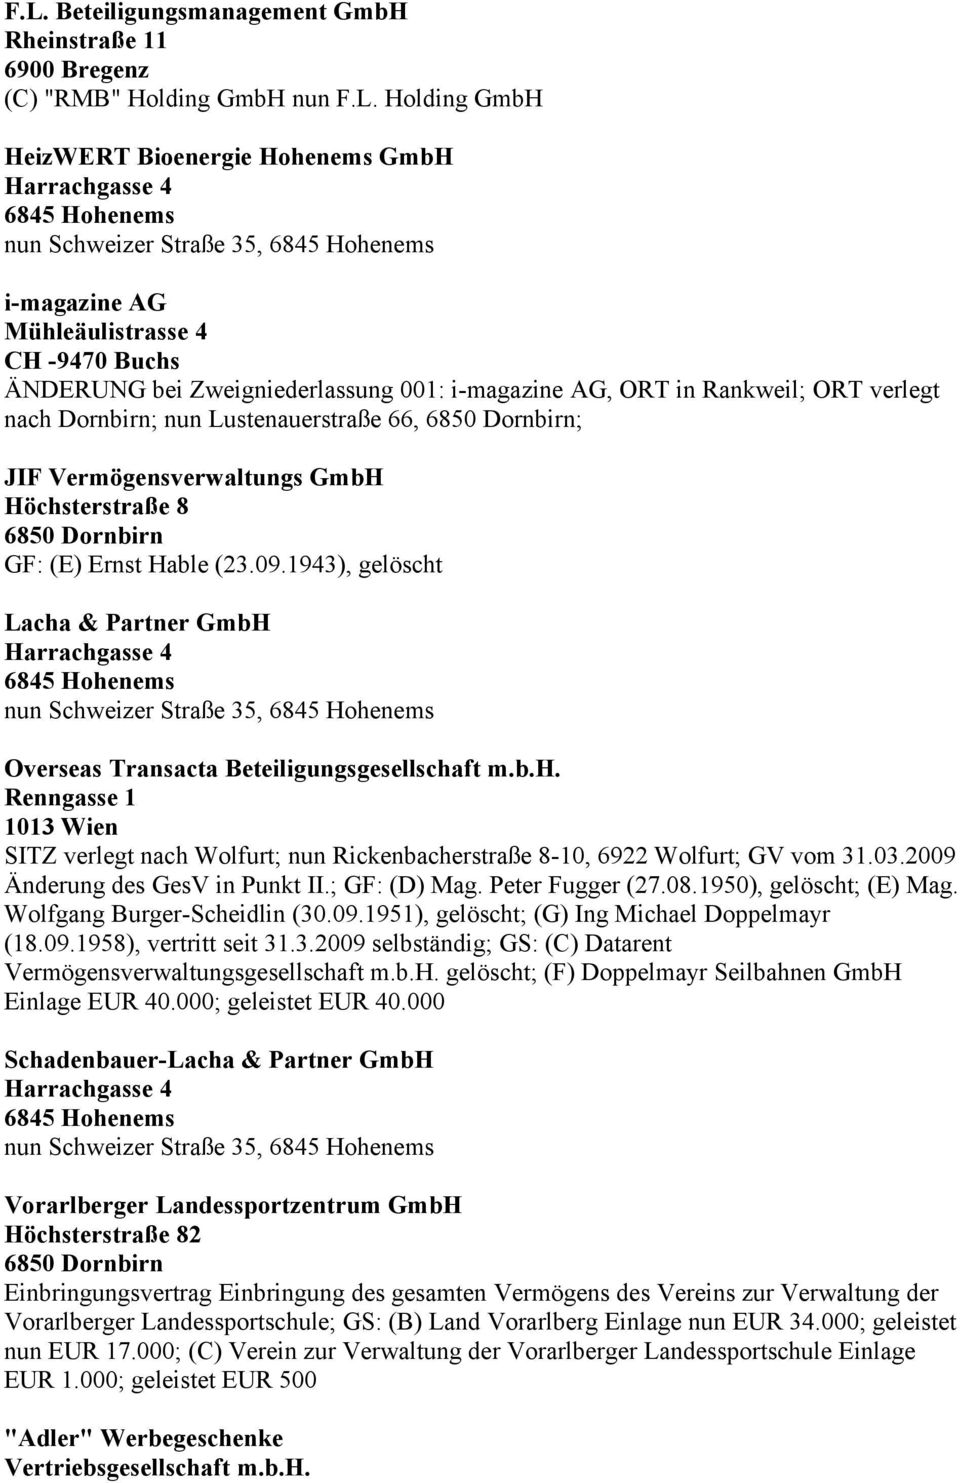 Hable (23.09.1943), gelöscht Lacha & Partner GmbH Overseas Transacta Beteiligungsgesellschaft m.b.h. Renngasse 1 1013 Wien SITZ verlegt nach Wolfurt; nun Rickenbacherstraße 8-10, 6922 Wolfurt; GV vom 31.